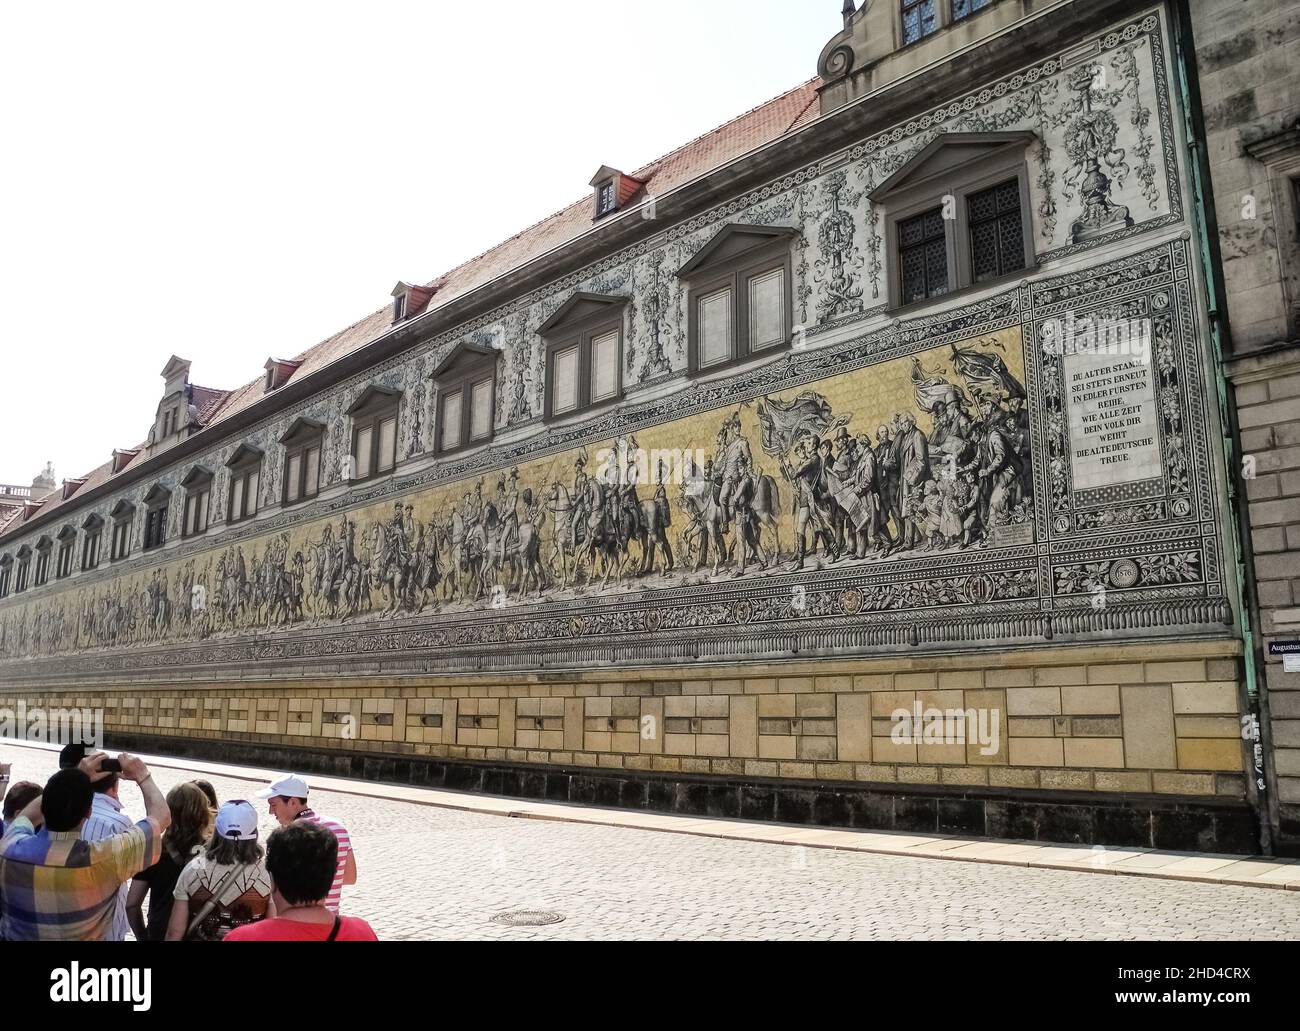 Murale historique (Fürstenzug, procession des Princes) dans la ville de Dresde, capitale de l'état allemand de Saxe, haute-Saxe, Germa Banque D'Images